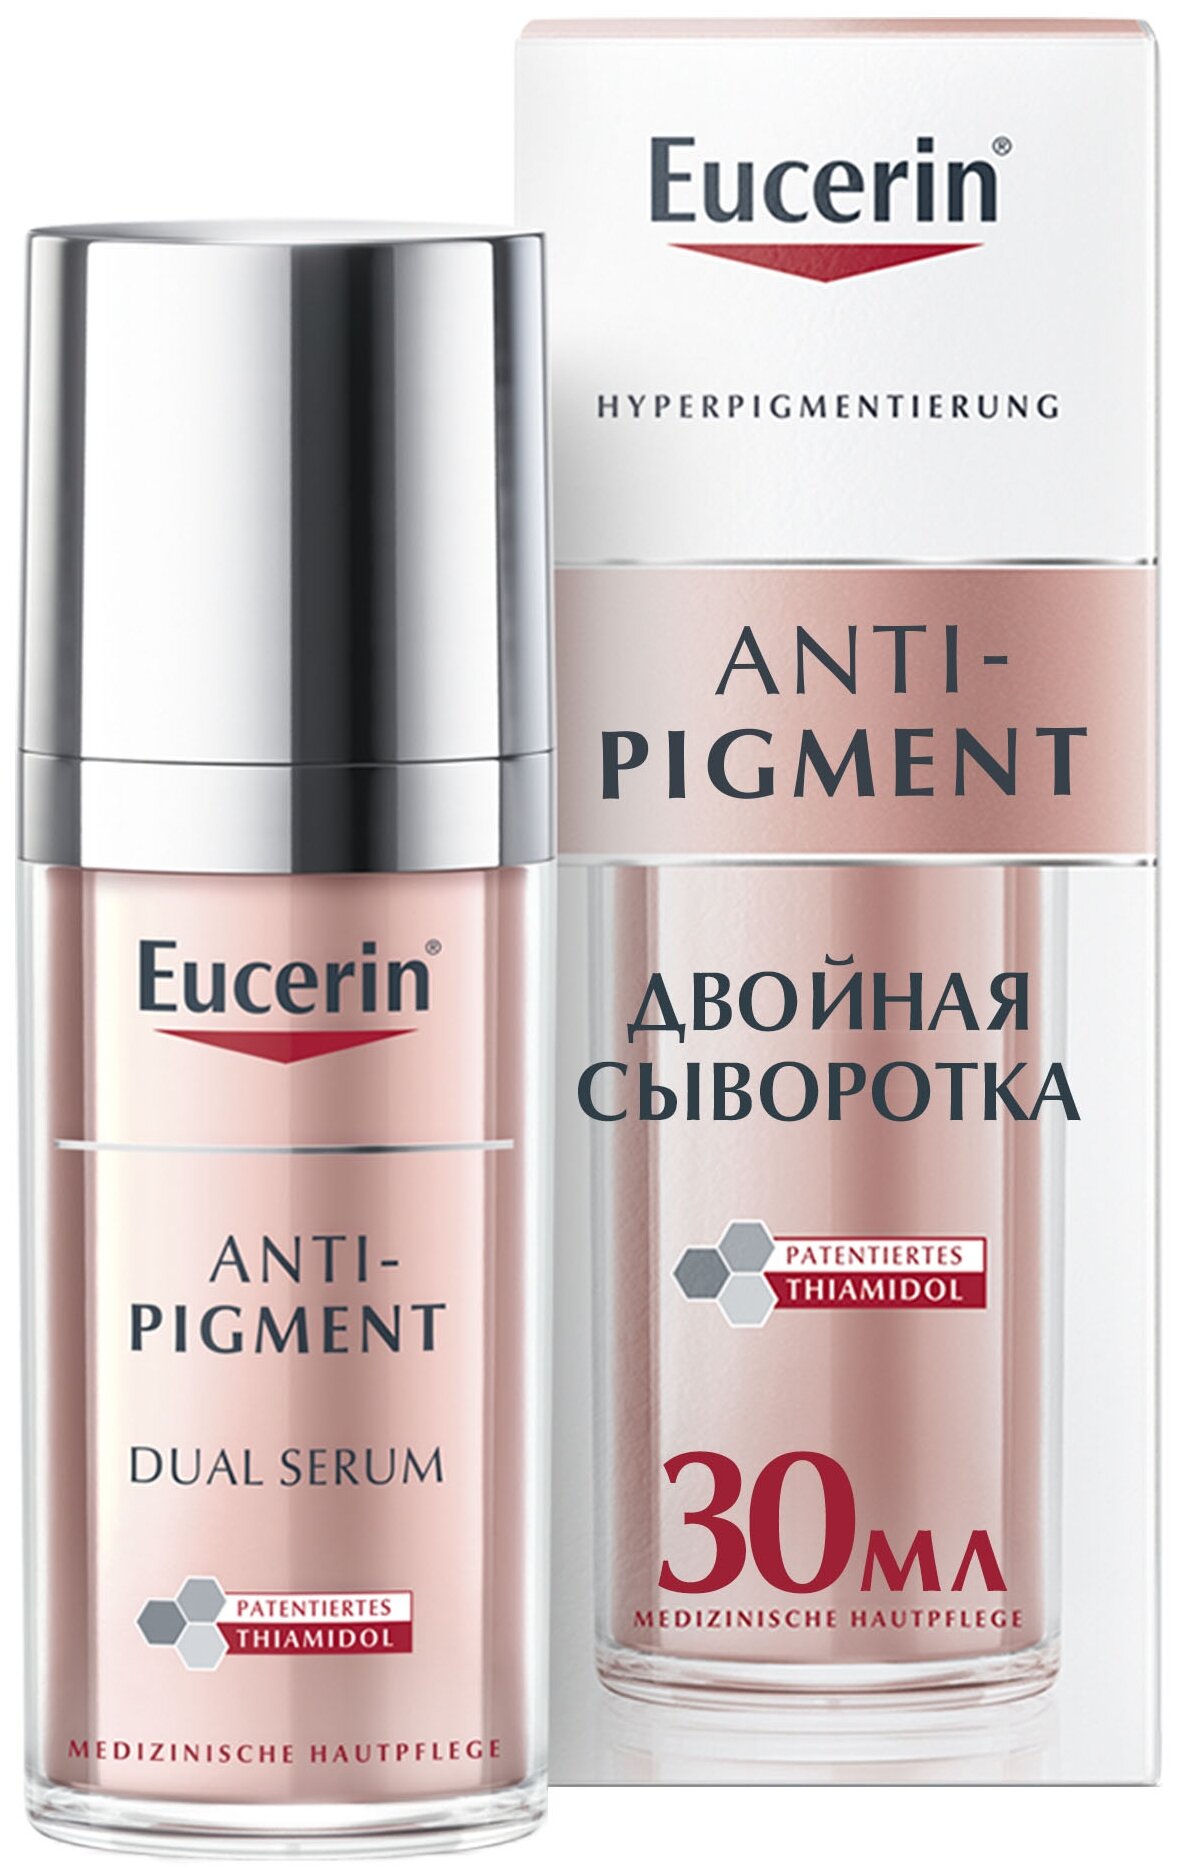 Eucerin Anti-Pigment Dual Serum Двойная сыворотка для лица против пигментации